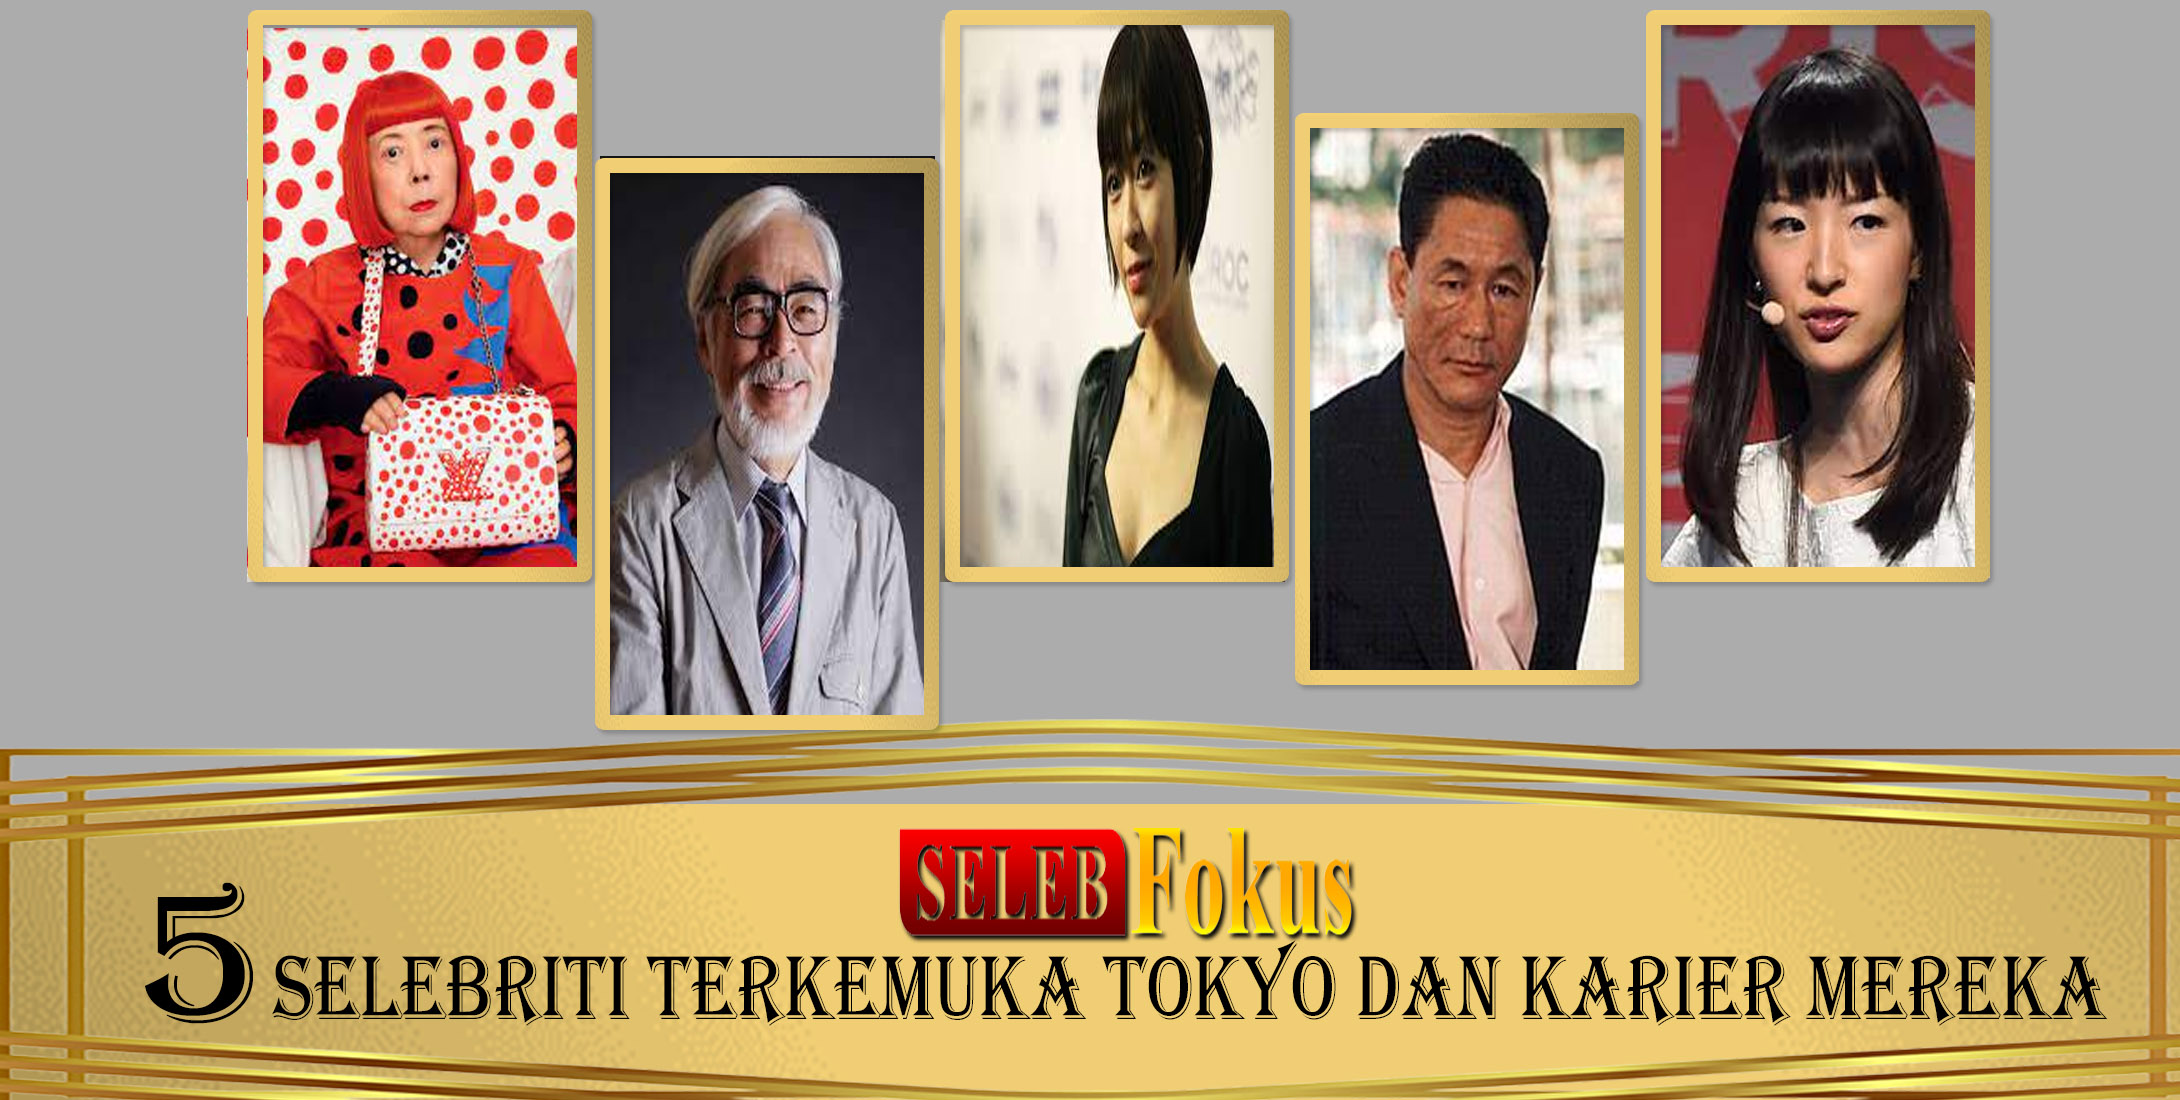 5 Selebriti Terkemuka Tokyo dan Karier Mereka